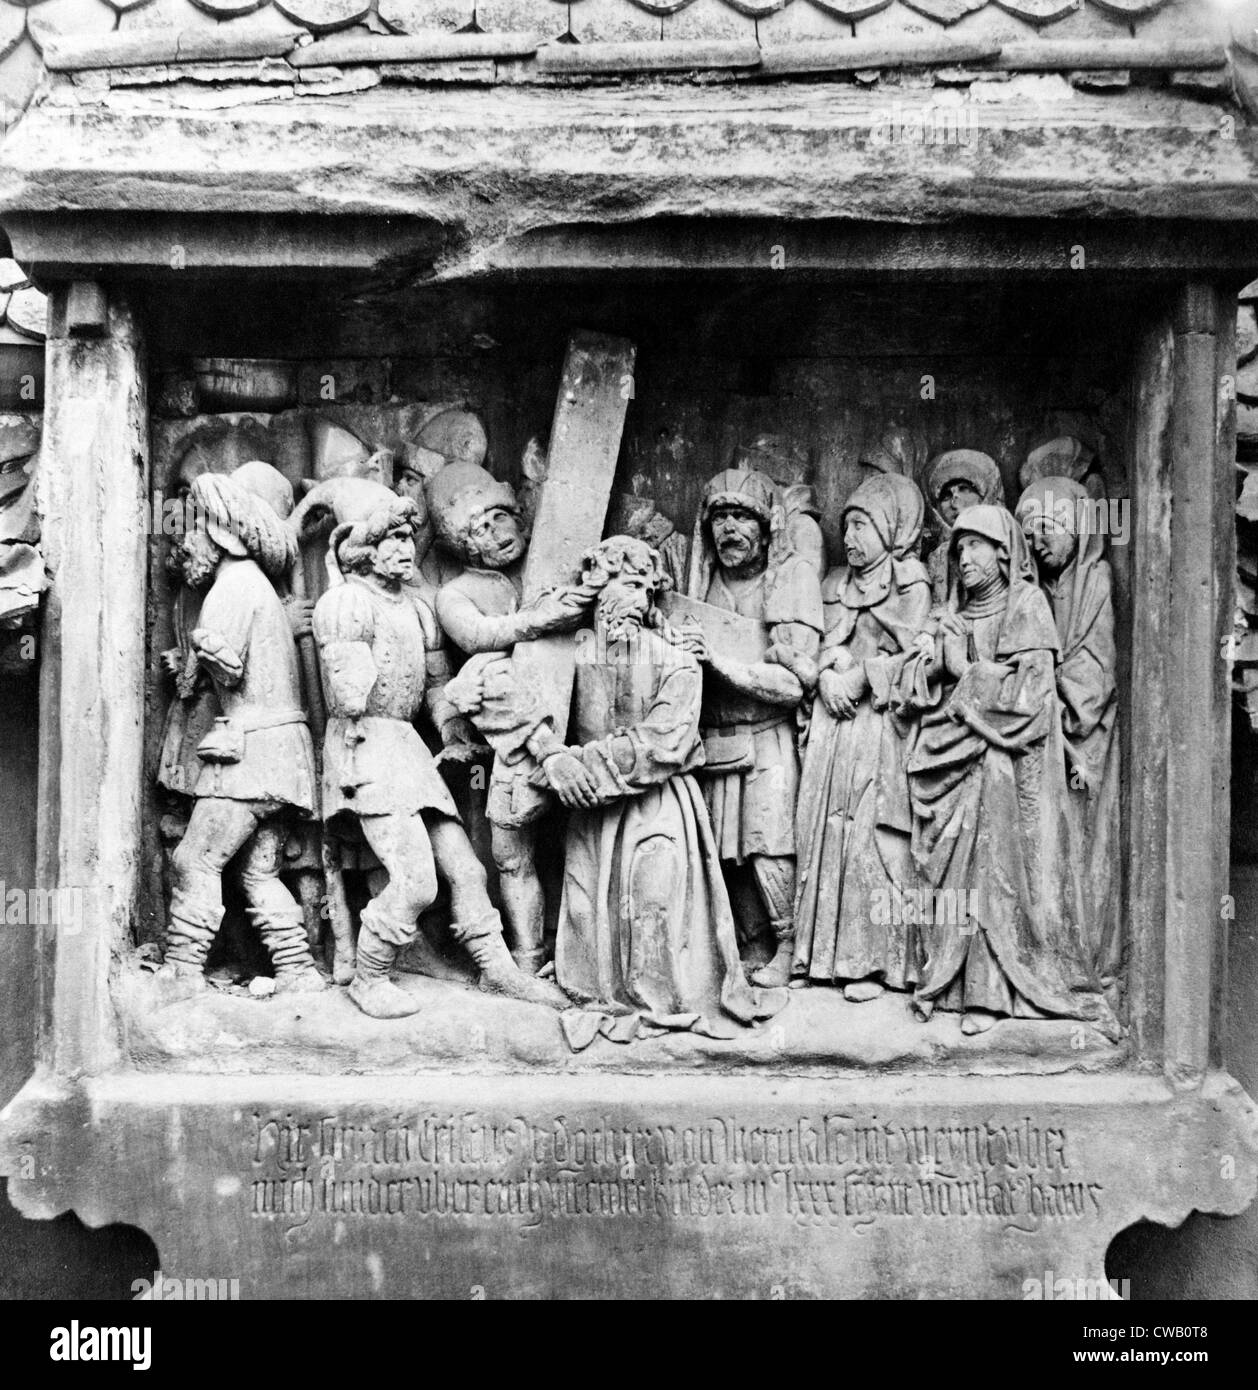 Jesus Christus, eine der sieben Stationen, Basrelief Skulptur von Adam Kraft, ca. 1400 s. Stockfoto